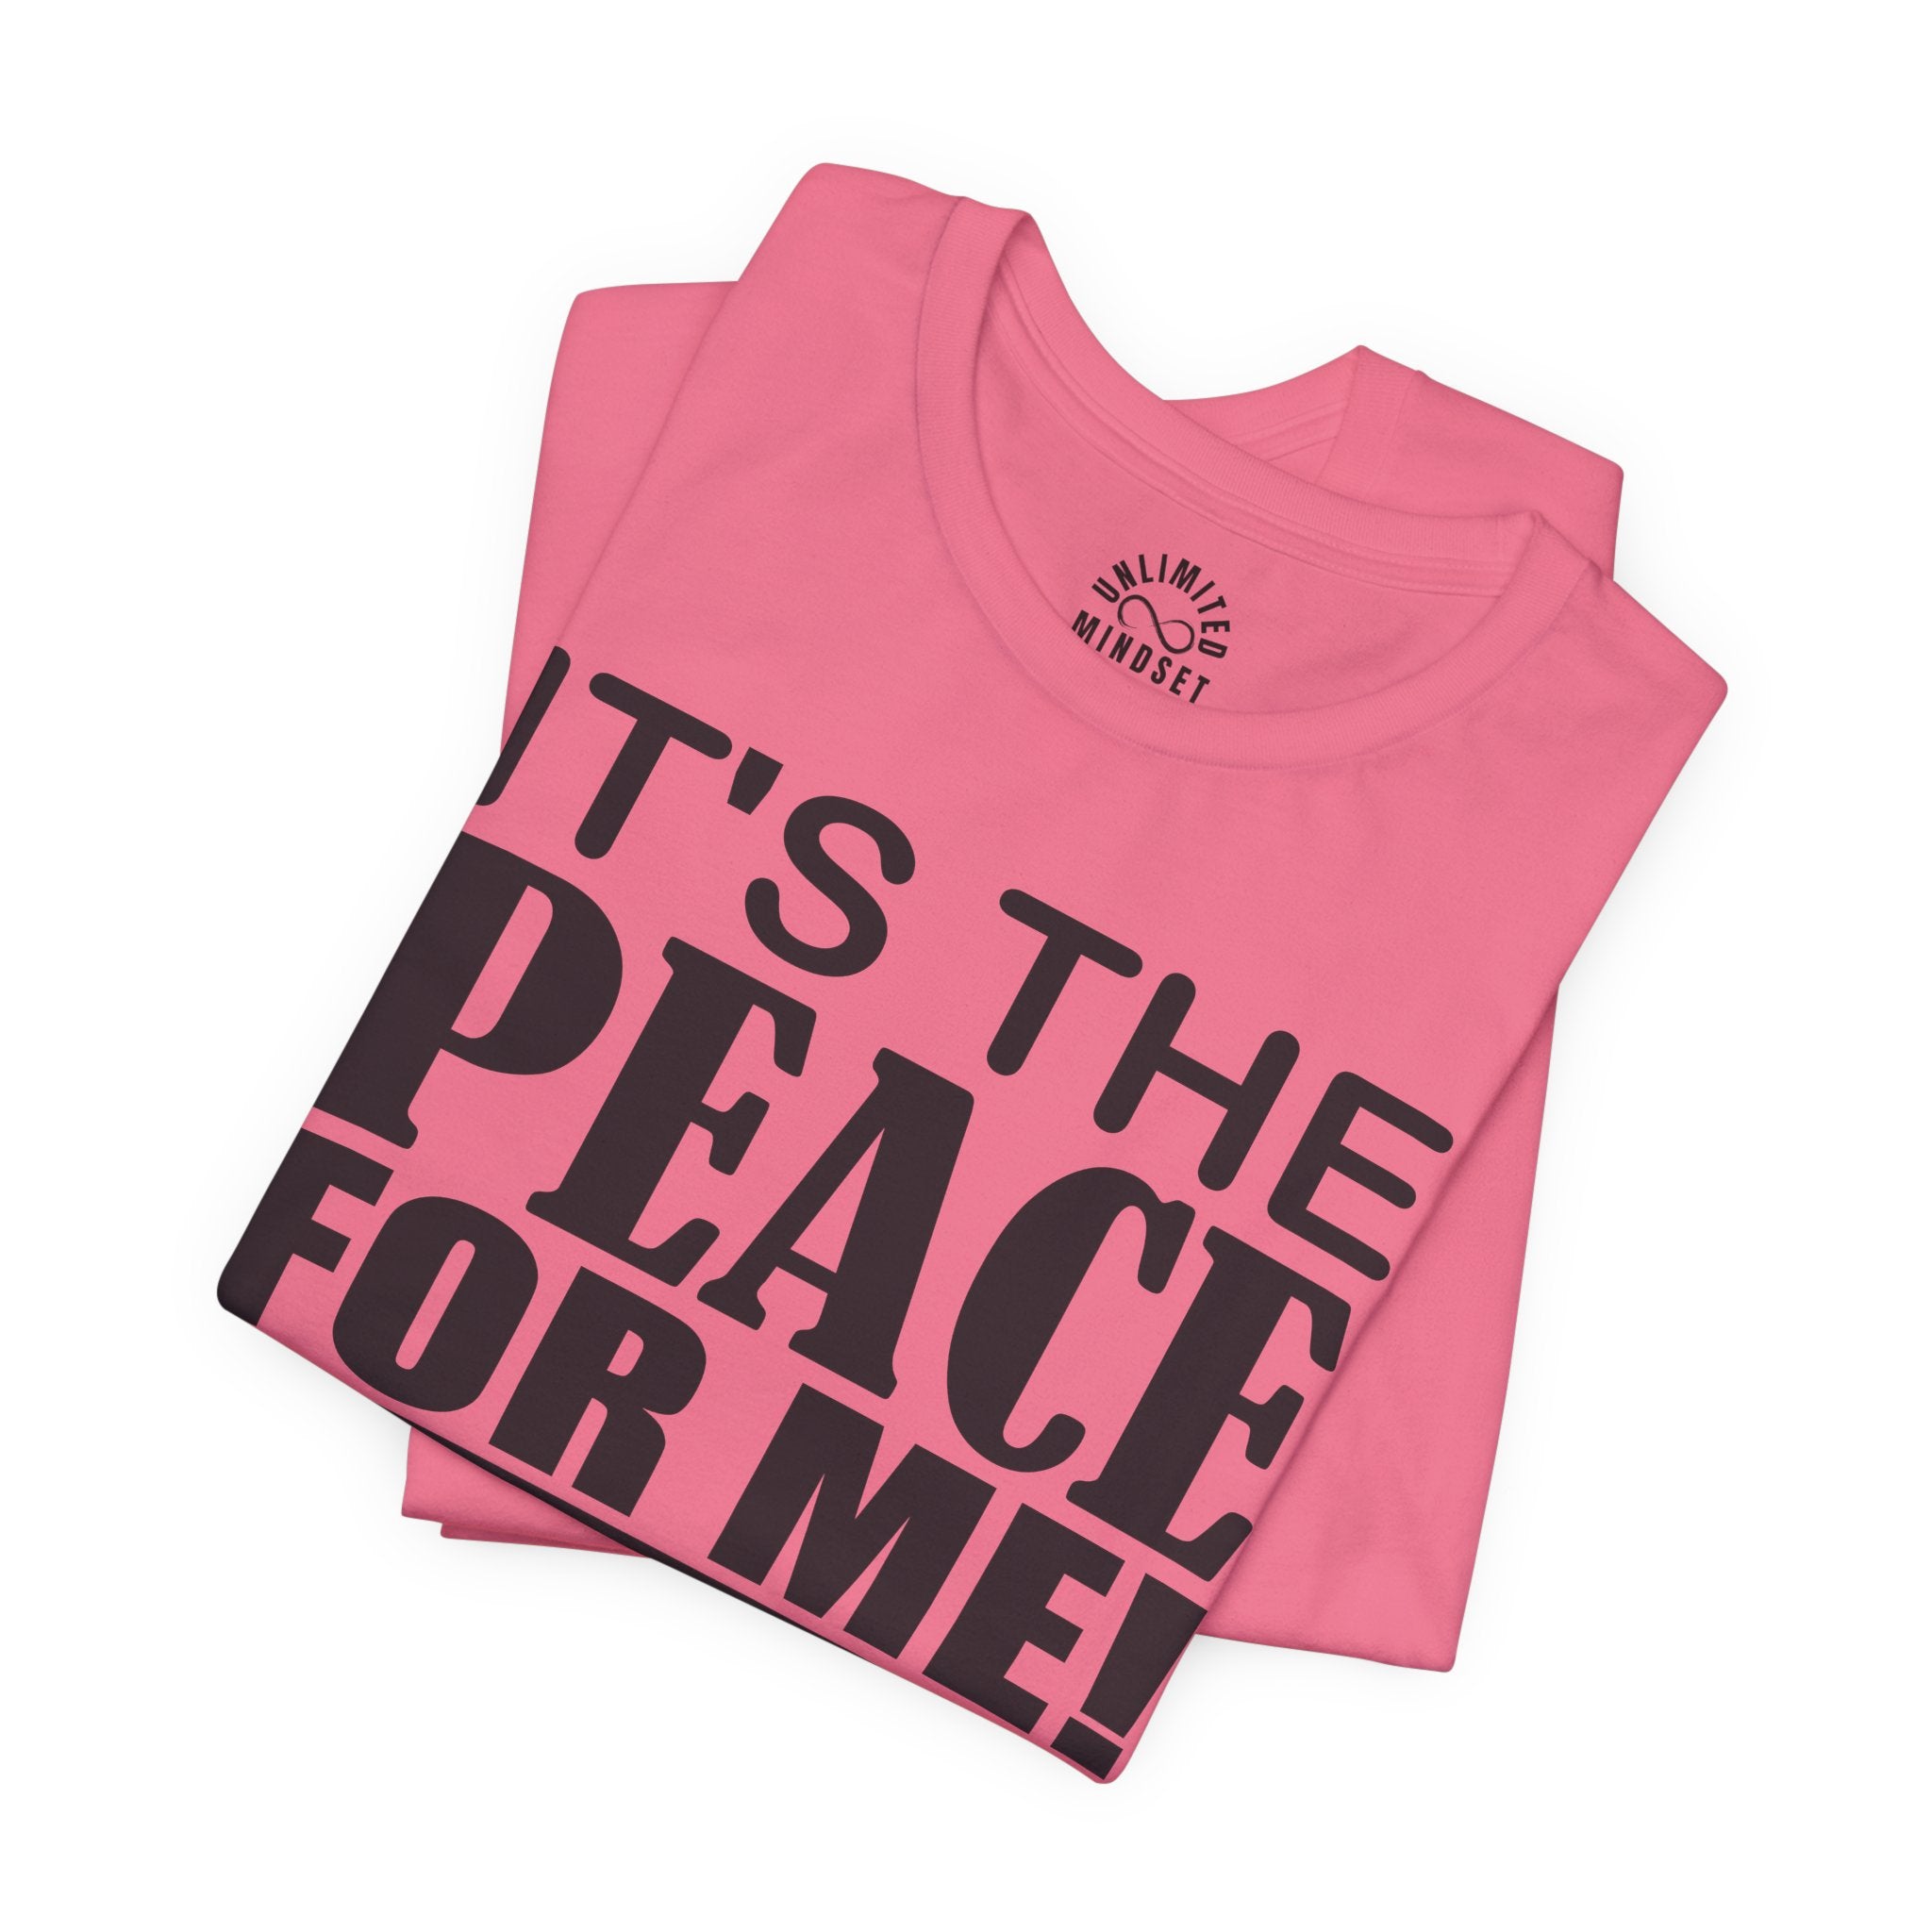 It's The Peace For Me Mindset T-shirt (Black Logo)